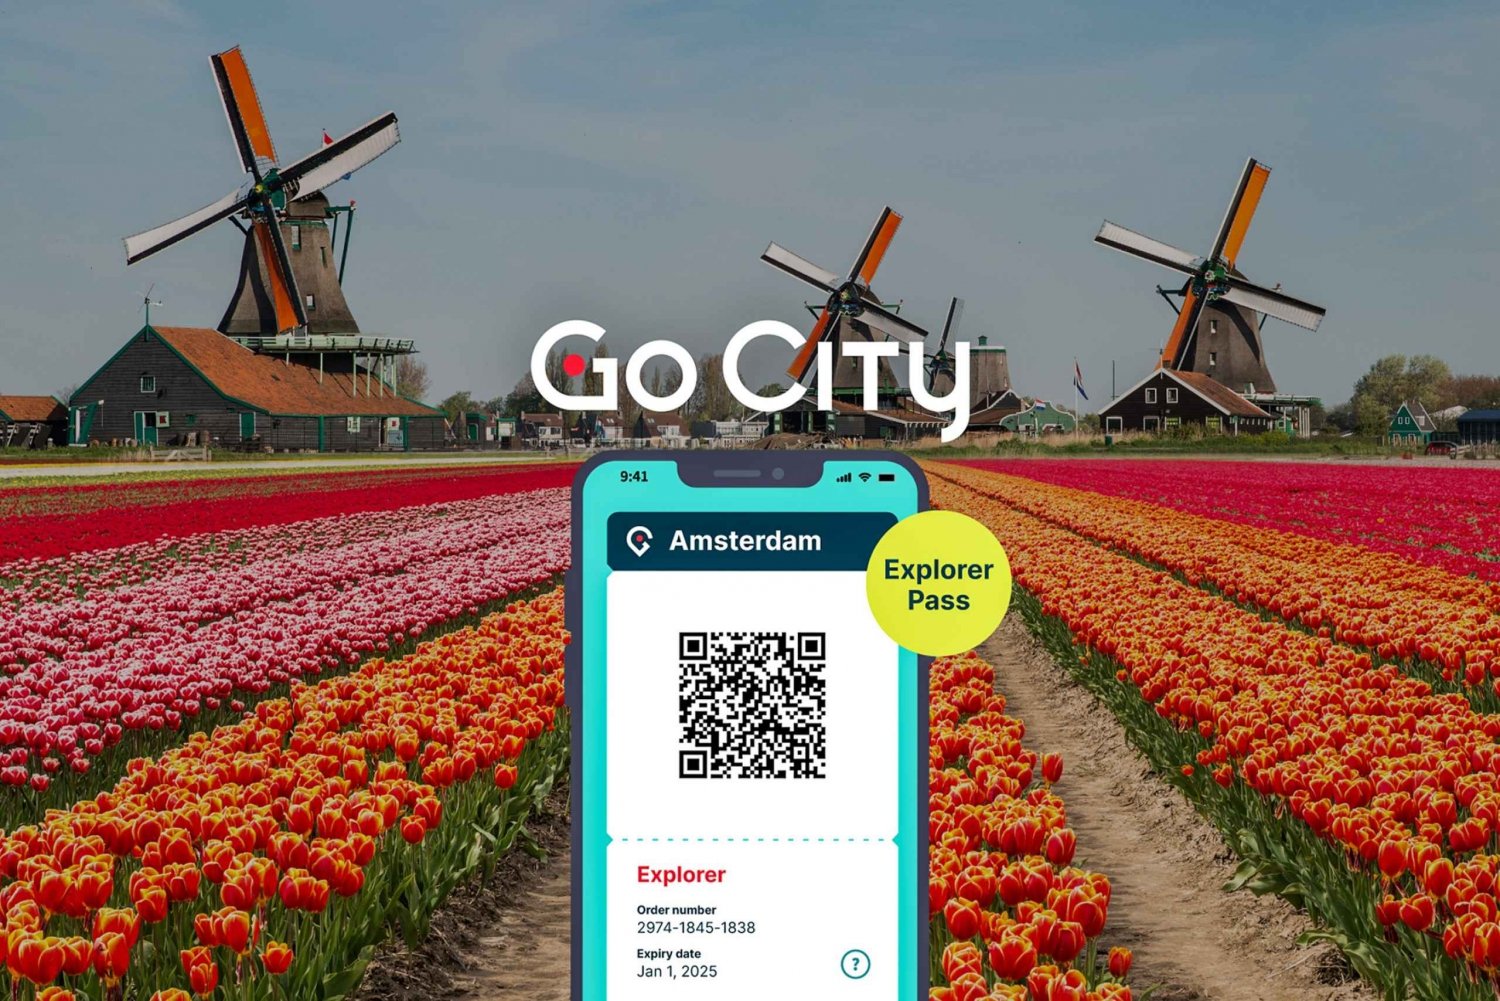 Amsterdam : Go City Explorer Pass - Choisissez 3 à 7 attractions